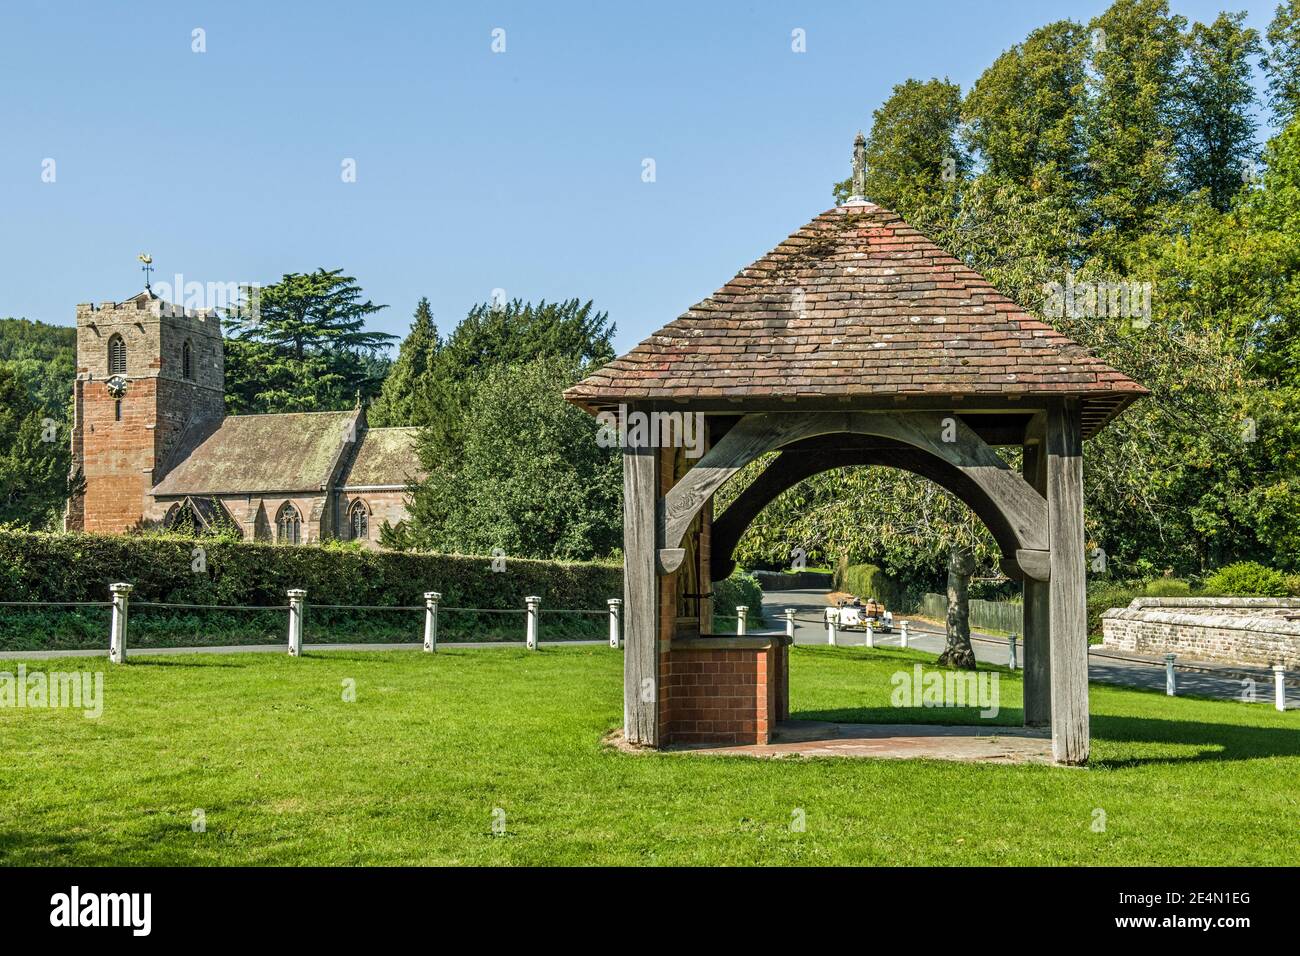 Le village d'Eastnor près de Ledbury dans le Herefordshire, Angleterre Banque D'Images